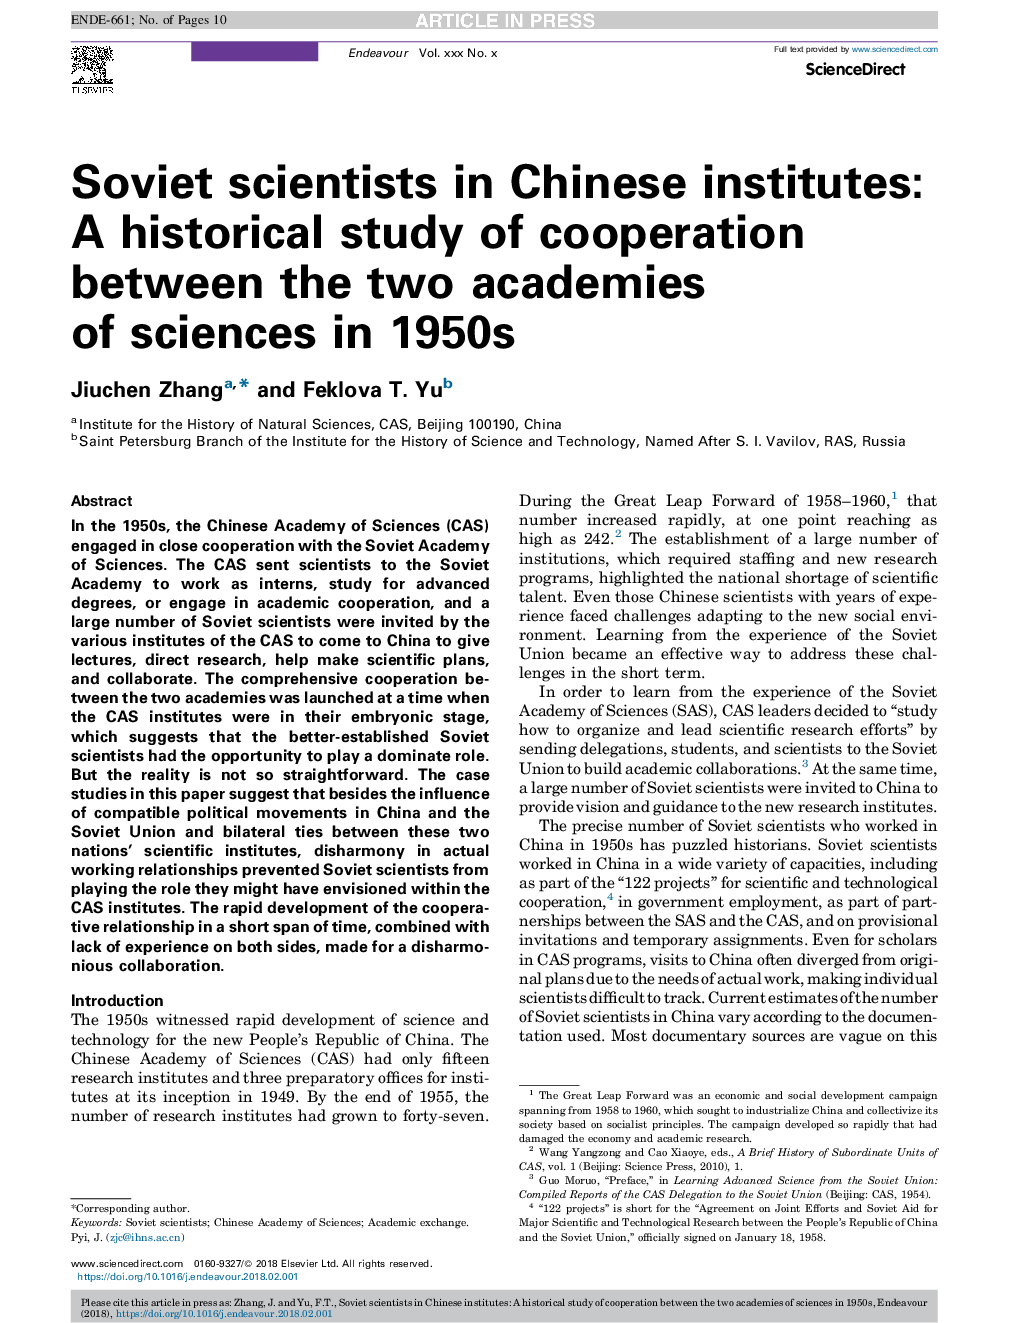 دانشمندان شوروی در موسسات چینی: مطالعات تاریخی در زمینه همکاری میان دو آکادمی علوم در دهه 1950 